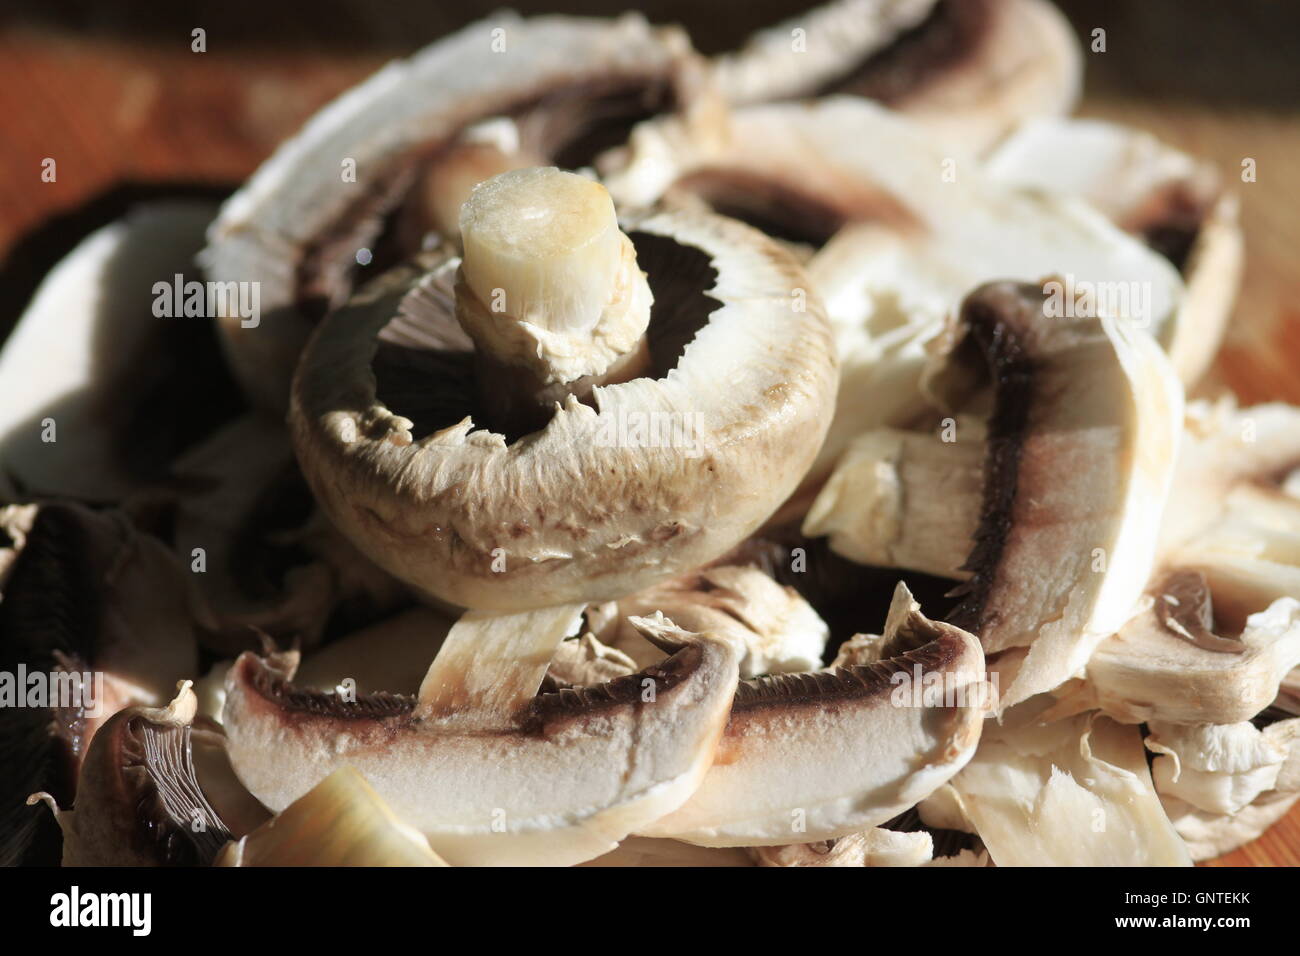 La préparation des aliments - champignons blancs, tranchés sur le plan de travail de cuisine en bois en attente d'être cuits. Banque D'Images